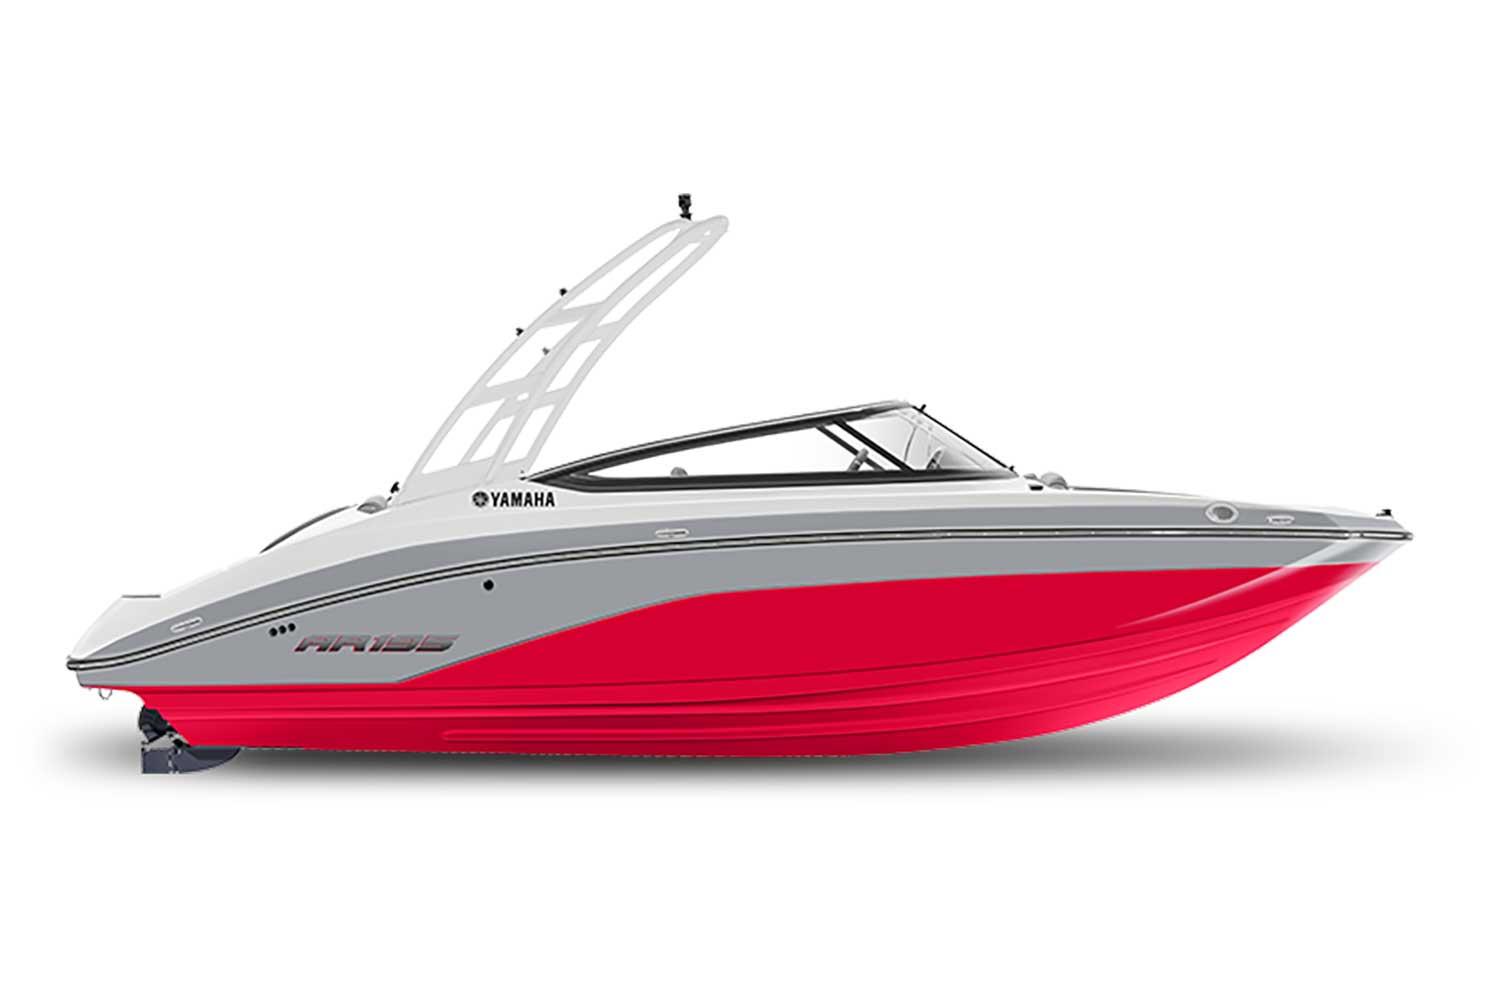 Yamaha Boats for sale - boats.com